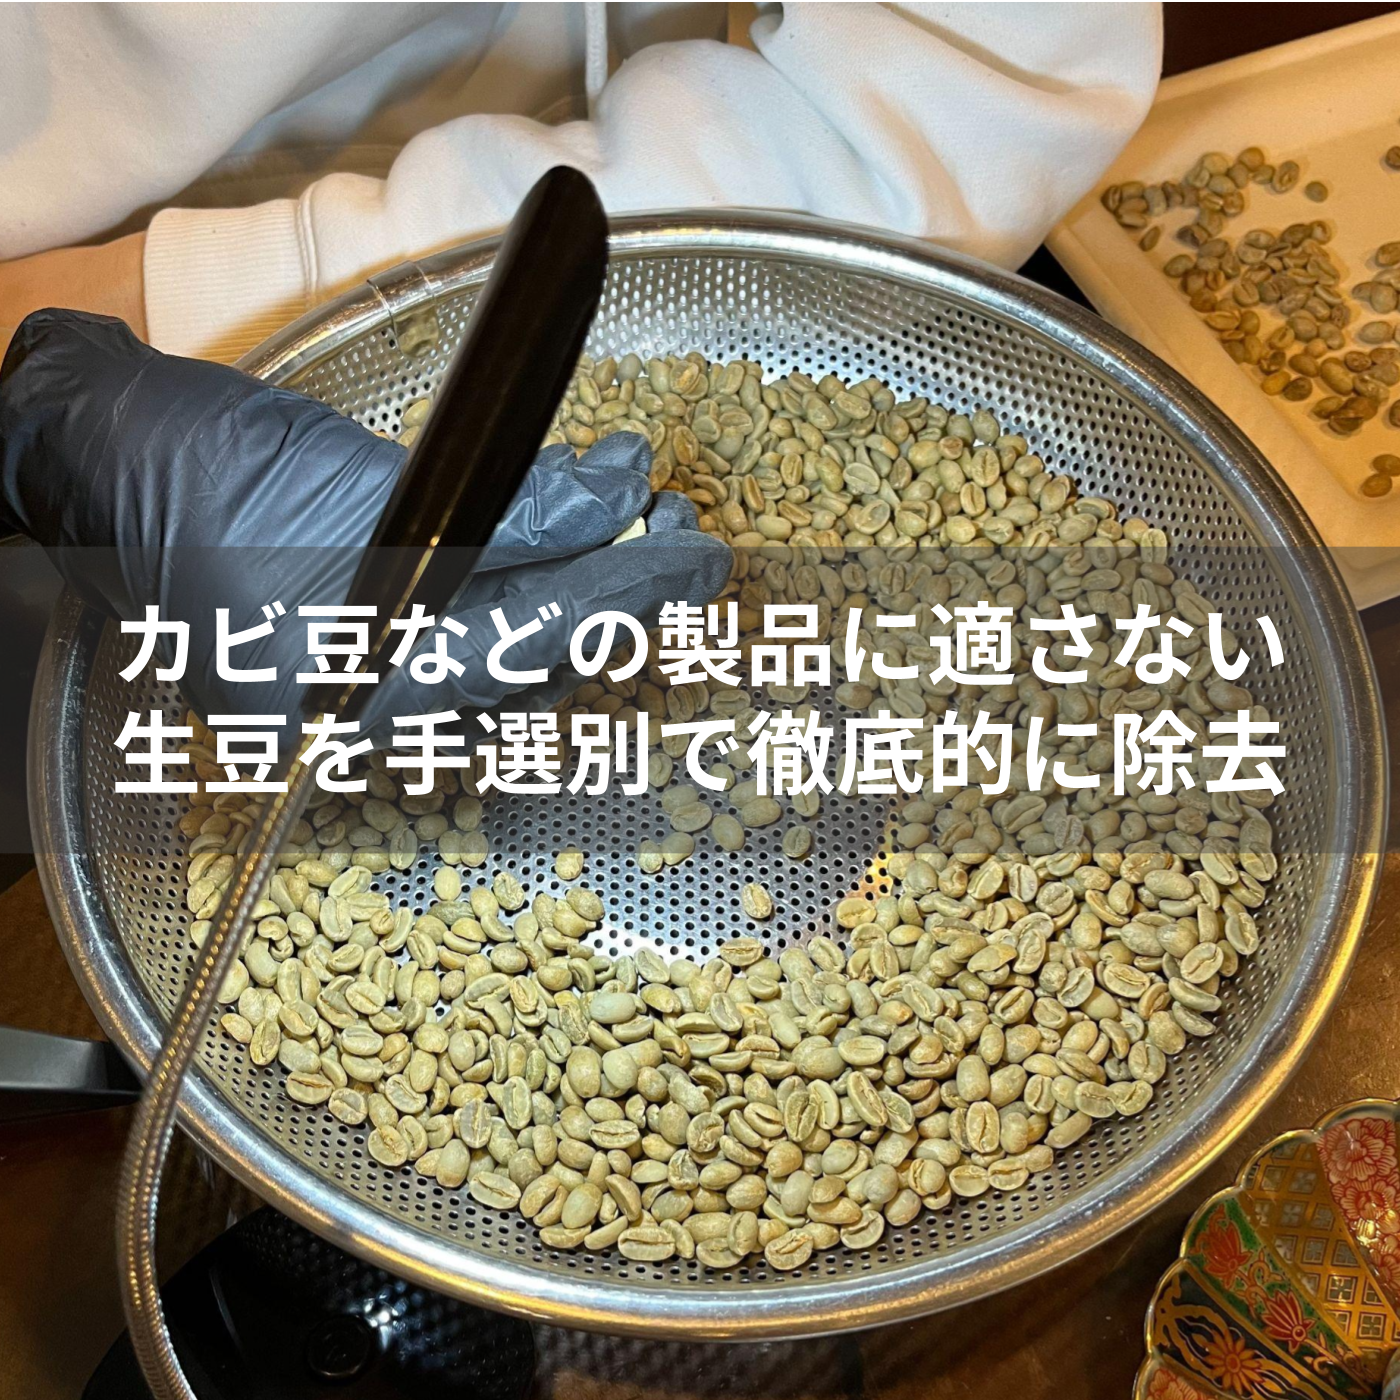 カビ豆など製品に適さない生豆を手選別で徹底的に除去